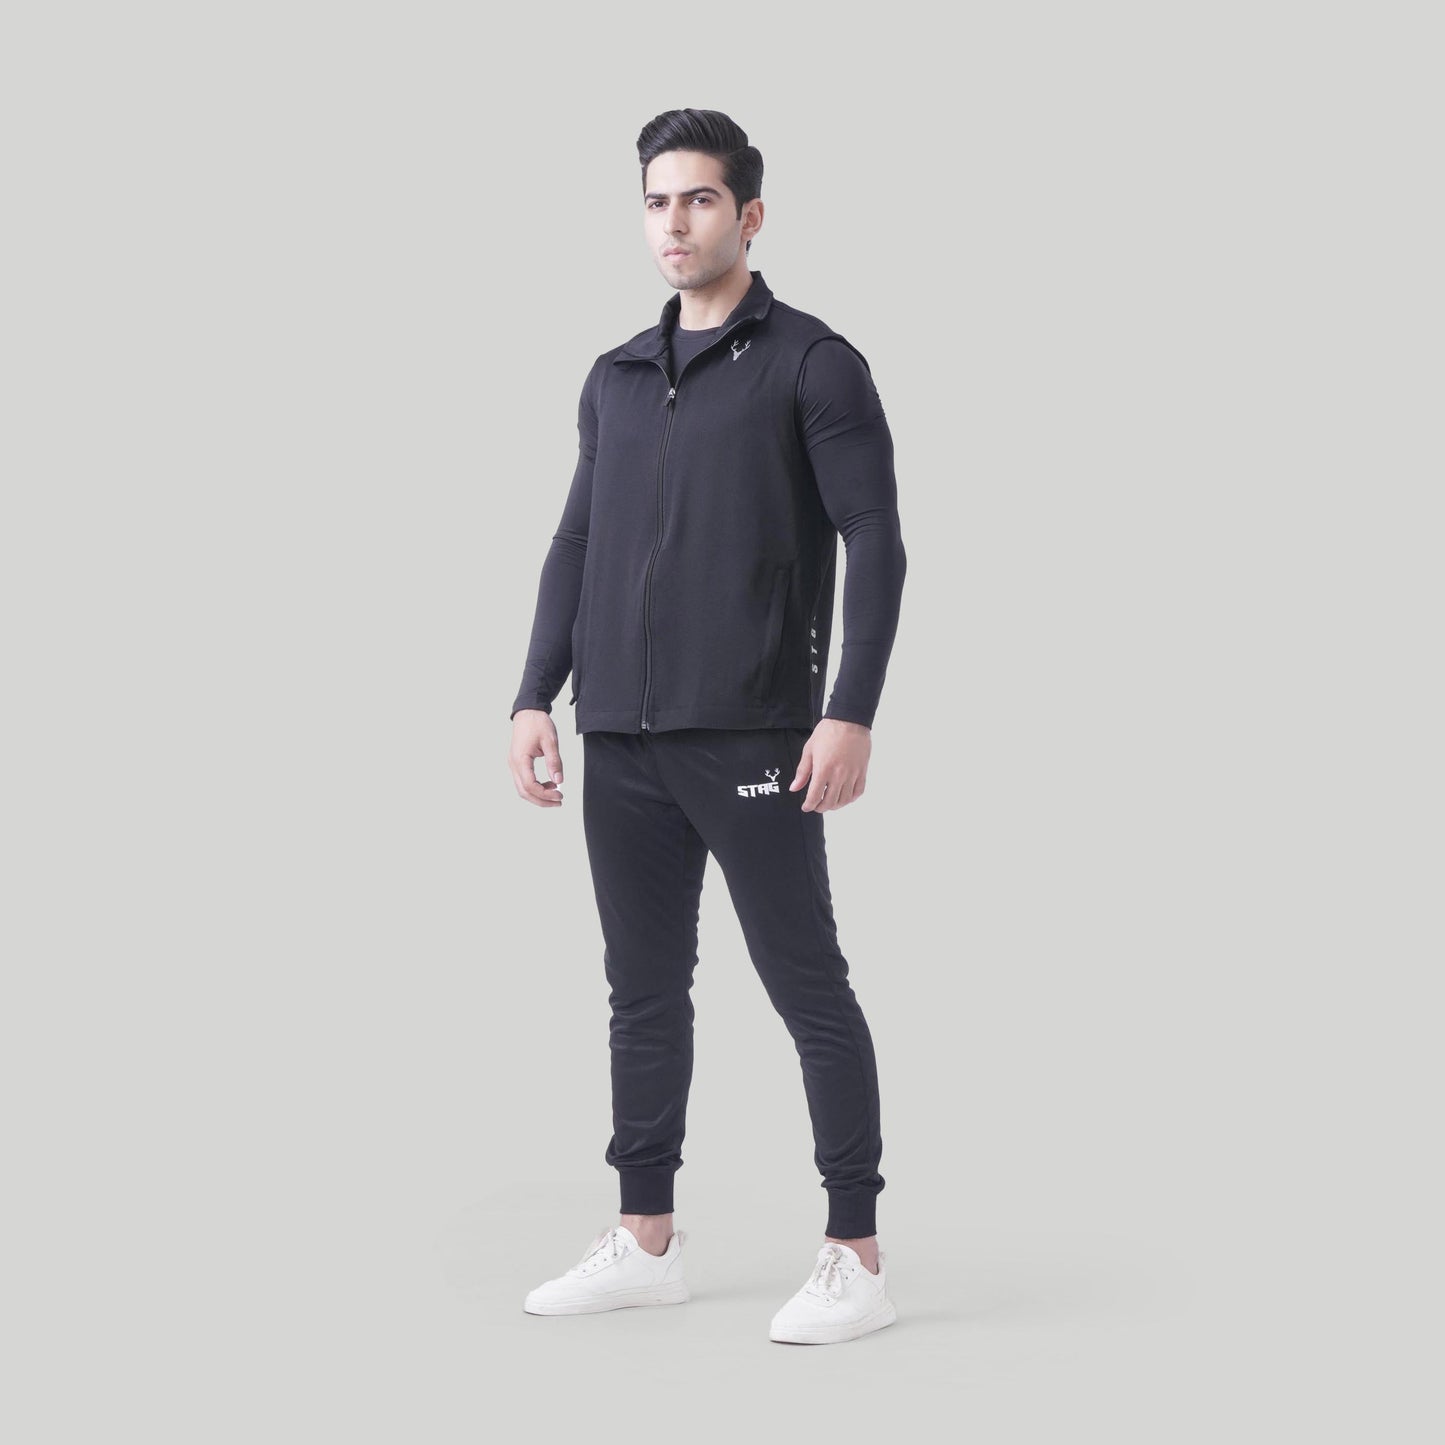 Unisex Sports Sleeveless Jacket (Black) - Stag Clothing 